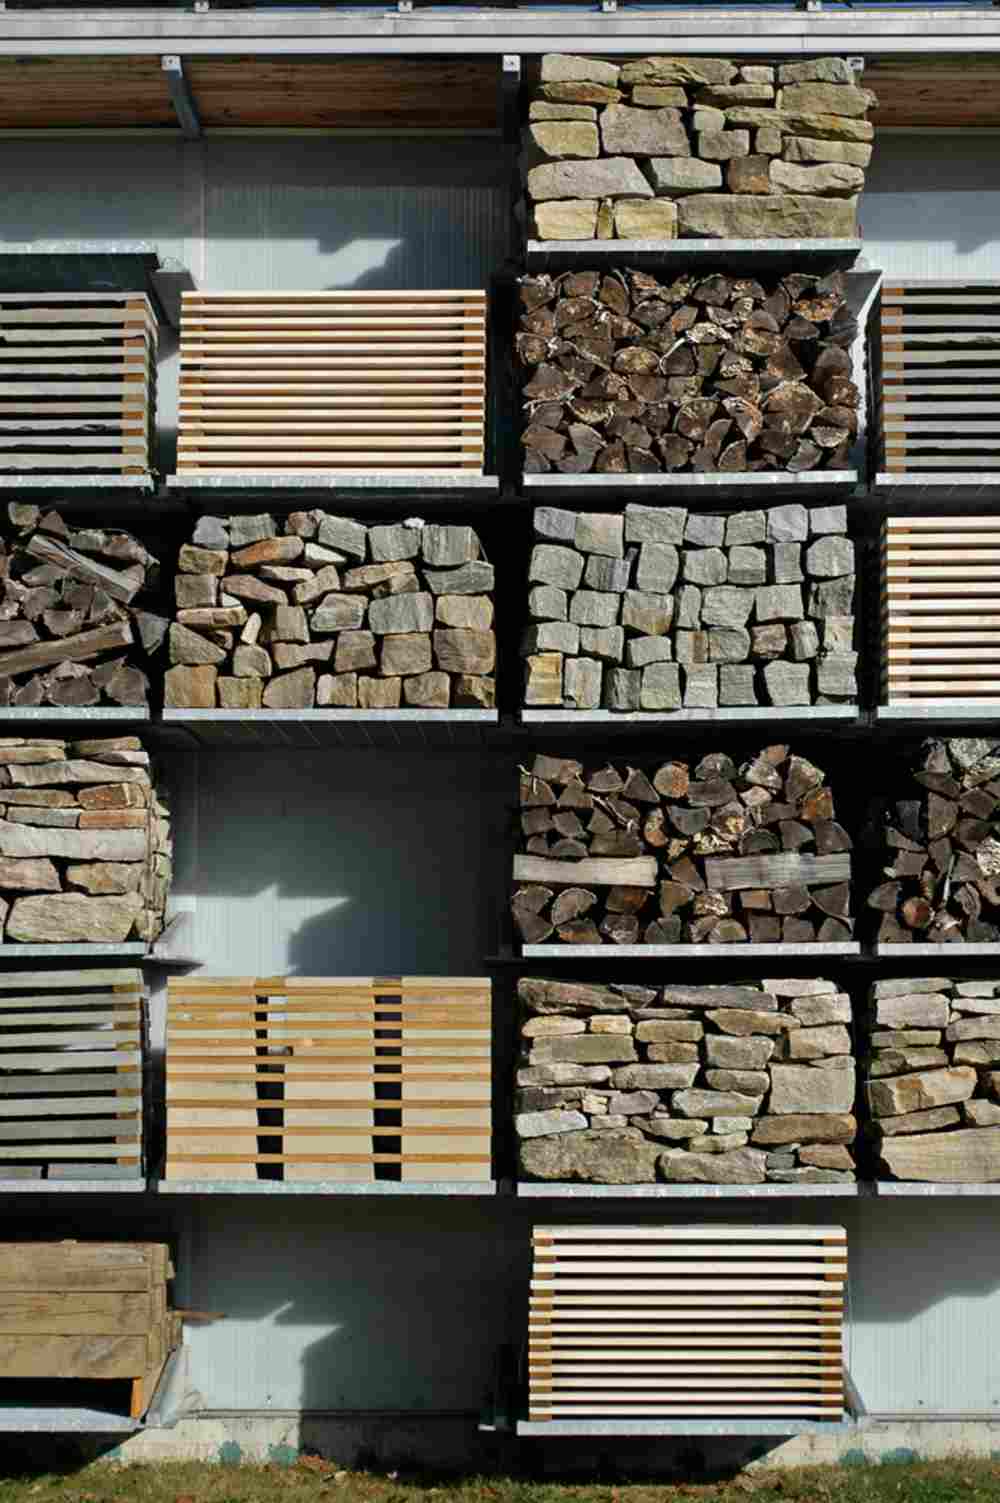 مواد البناء المختلفة مثل نفايات الخشب والحجر والبلاستيك والخرسانة جاهزة لإعادة التدوير